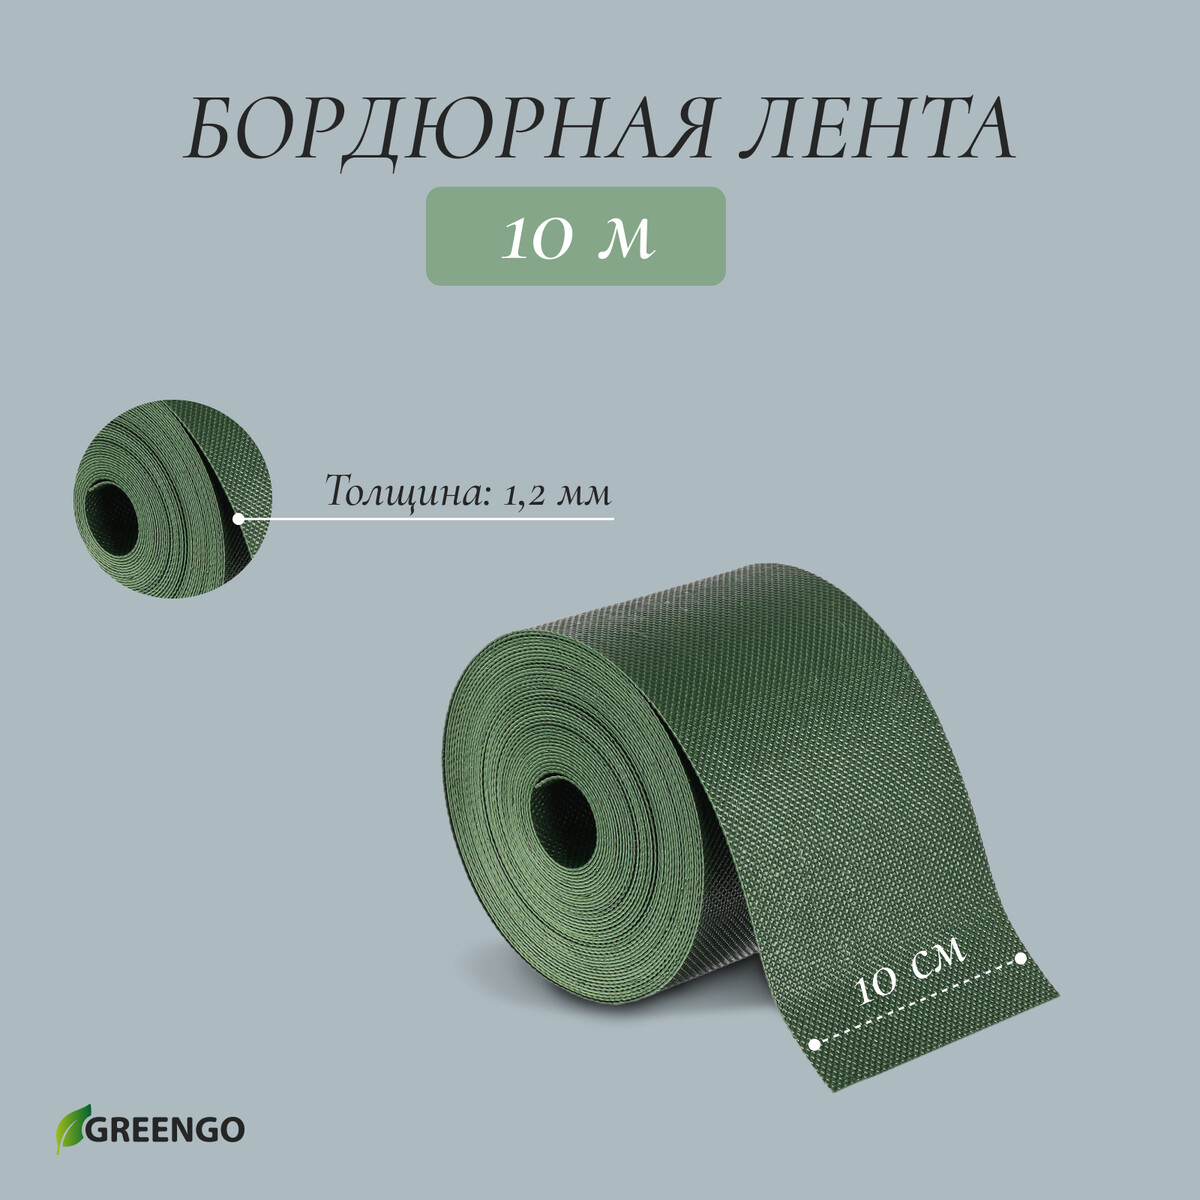 Лента бордюрная, 0.1 × 10 м, толщина 1.2 мм, пластиковая, зеленая, greengo лента бордюрная 0 1 × 10 м толщина 1 2 мм пластиковая коричневая greengo